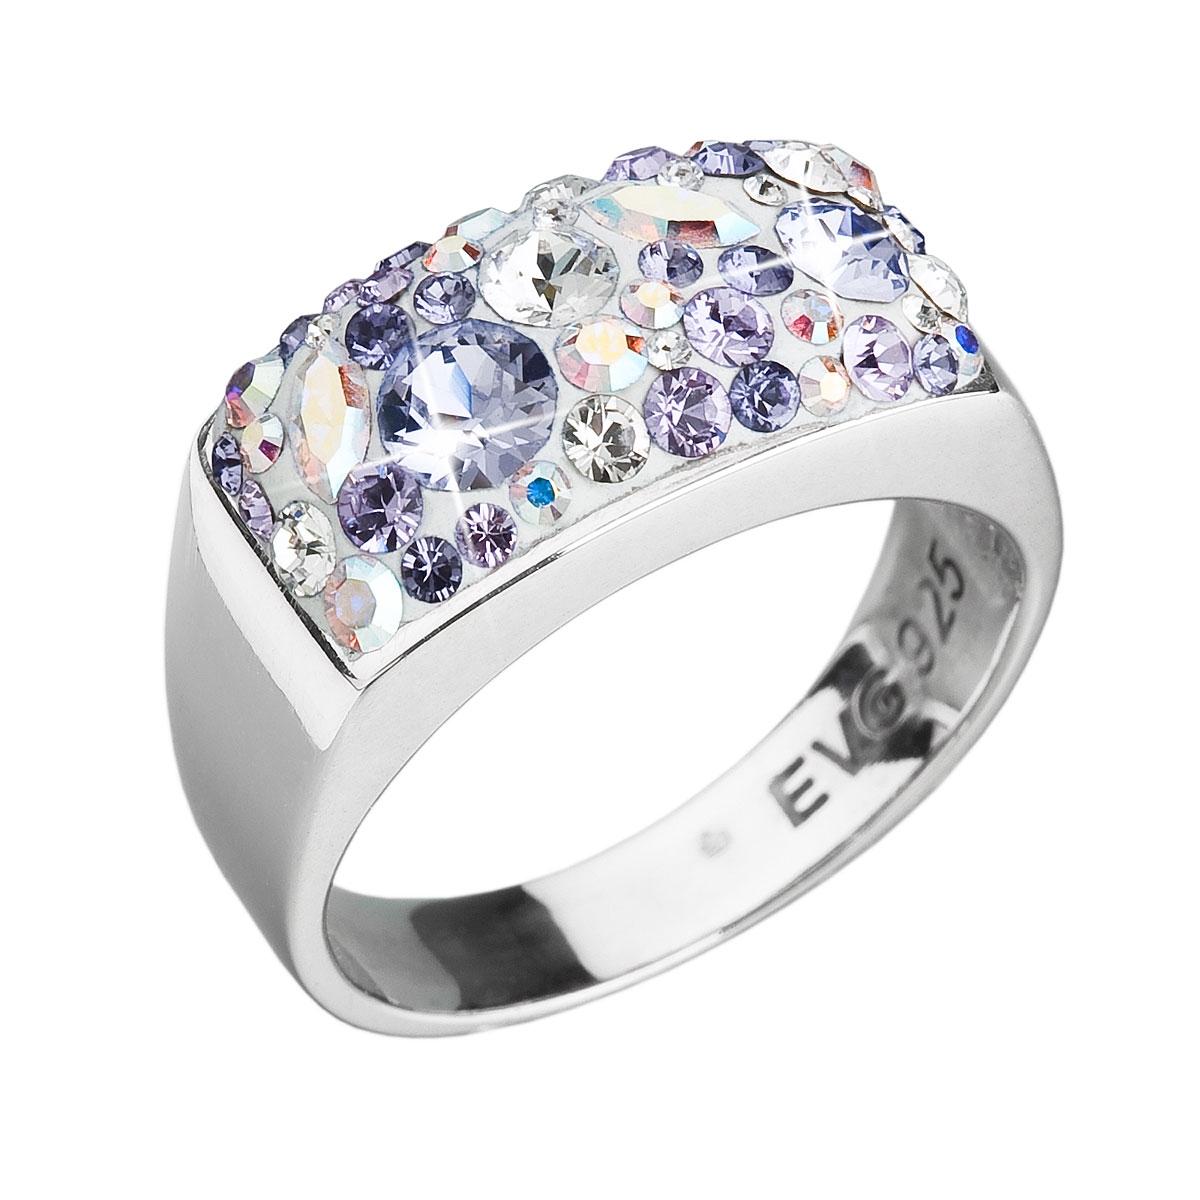 Strieborný prsteň s kryštálmi Swarovski Violet